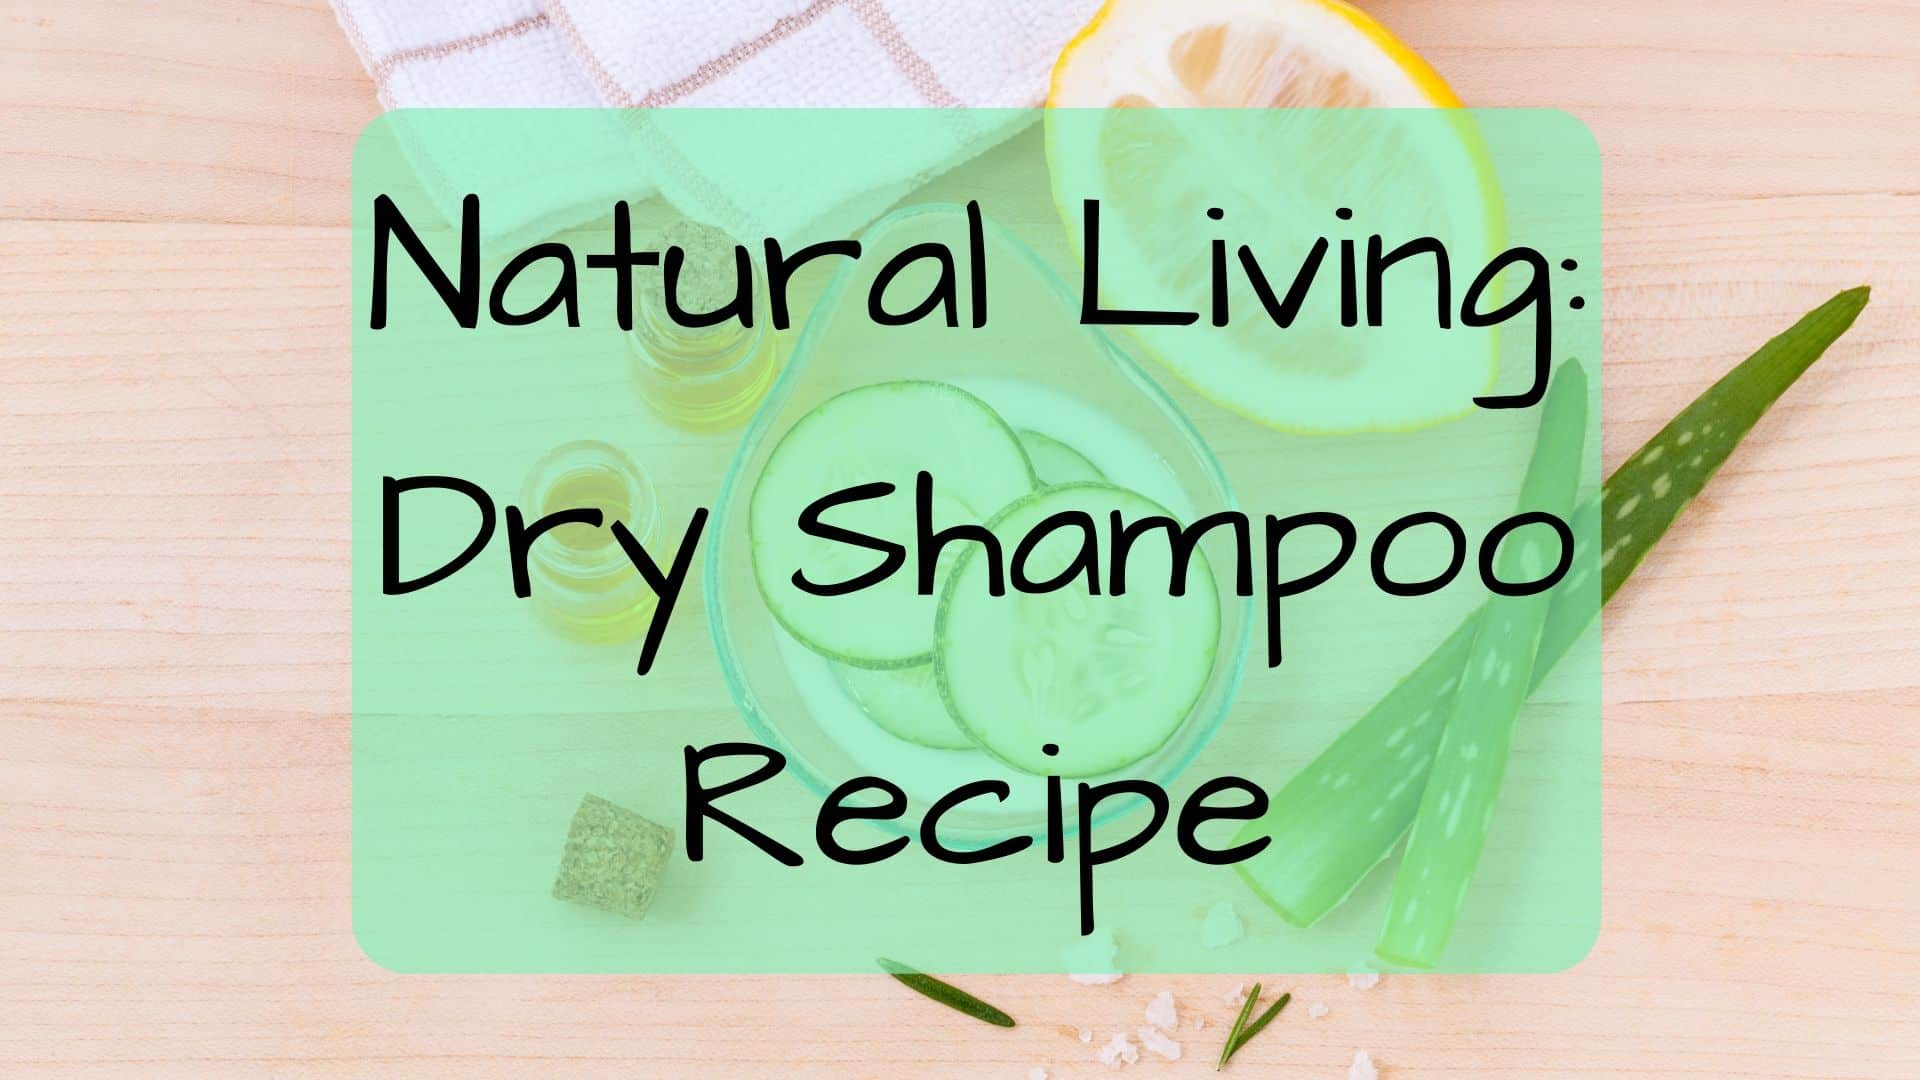 Natural Living: Dry Shampoo Recipe